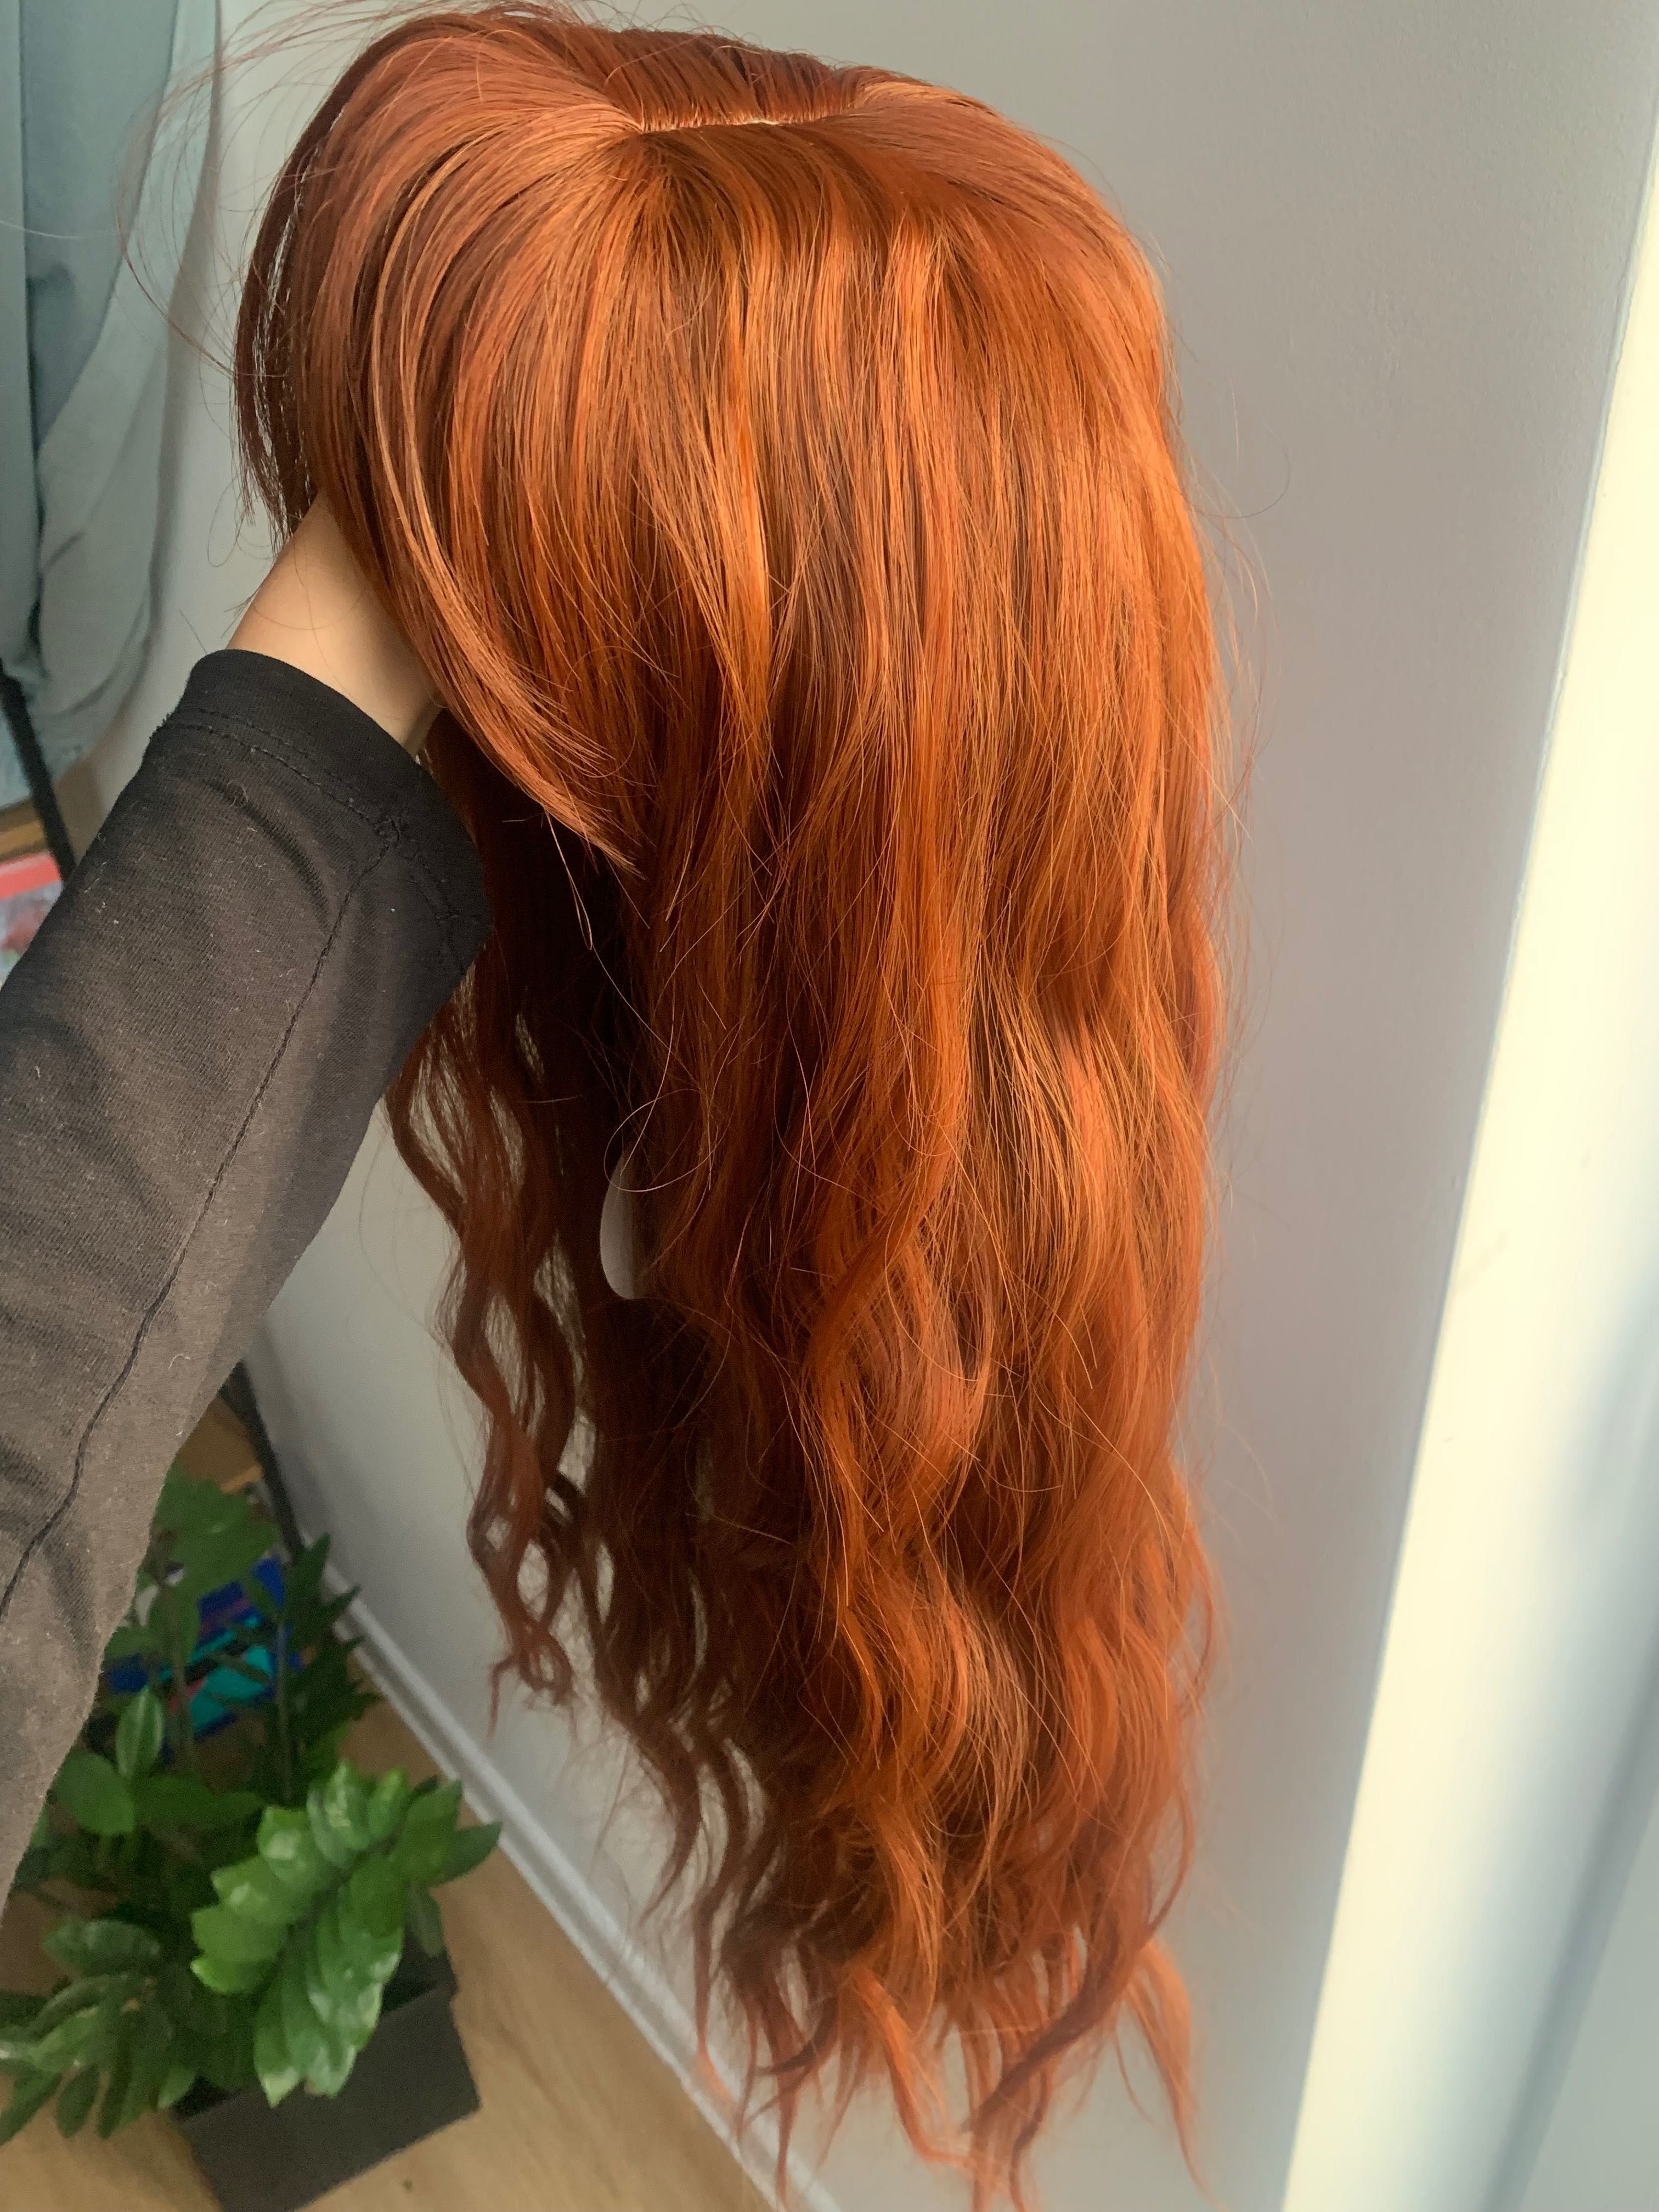 Peruka ruda włosy długa pomarańczowa damska jak naturalna